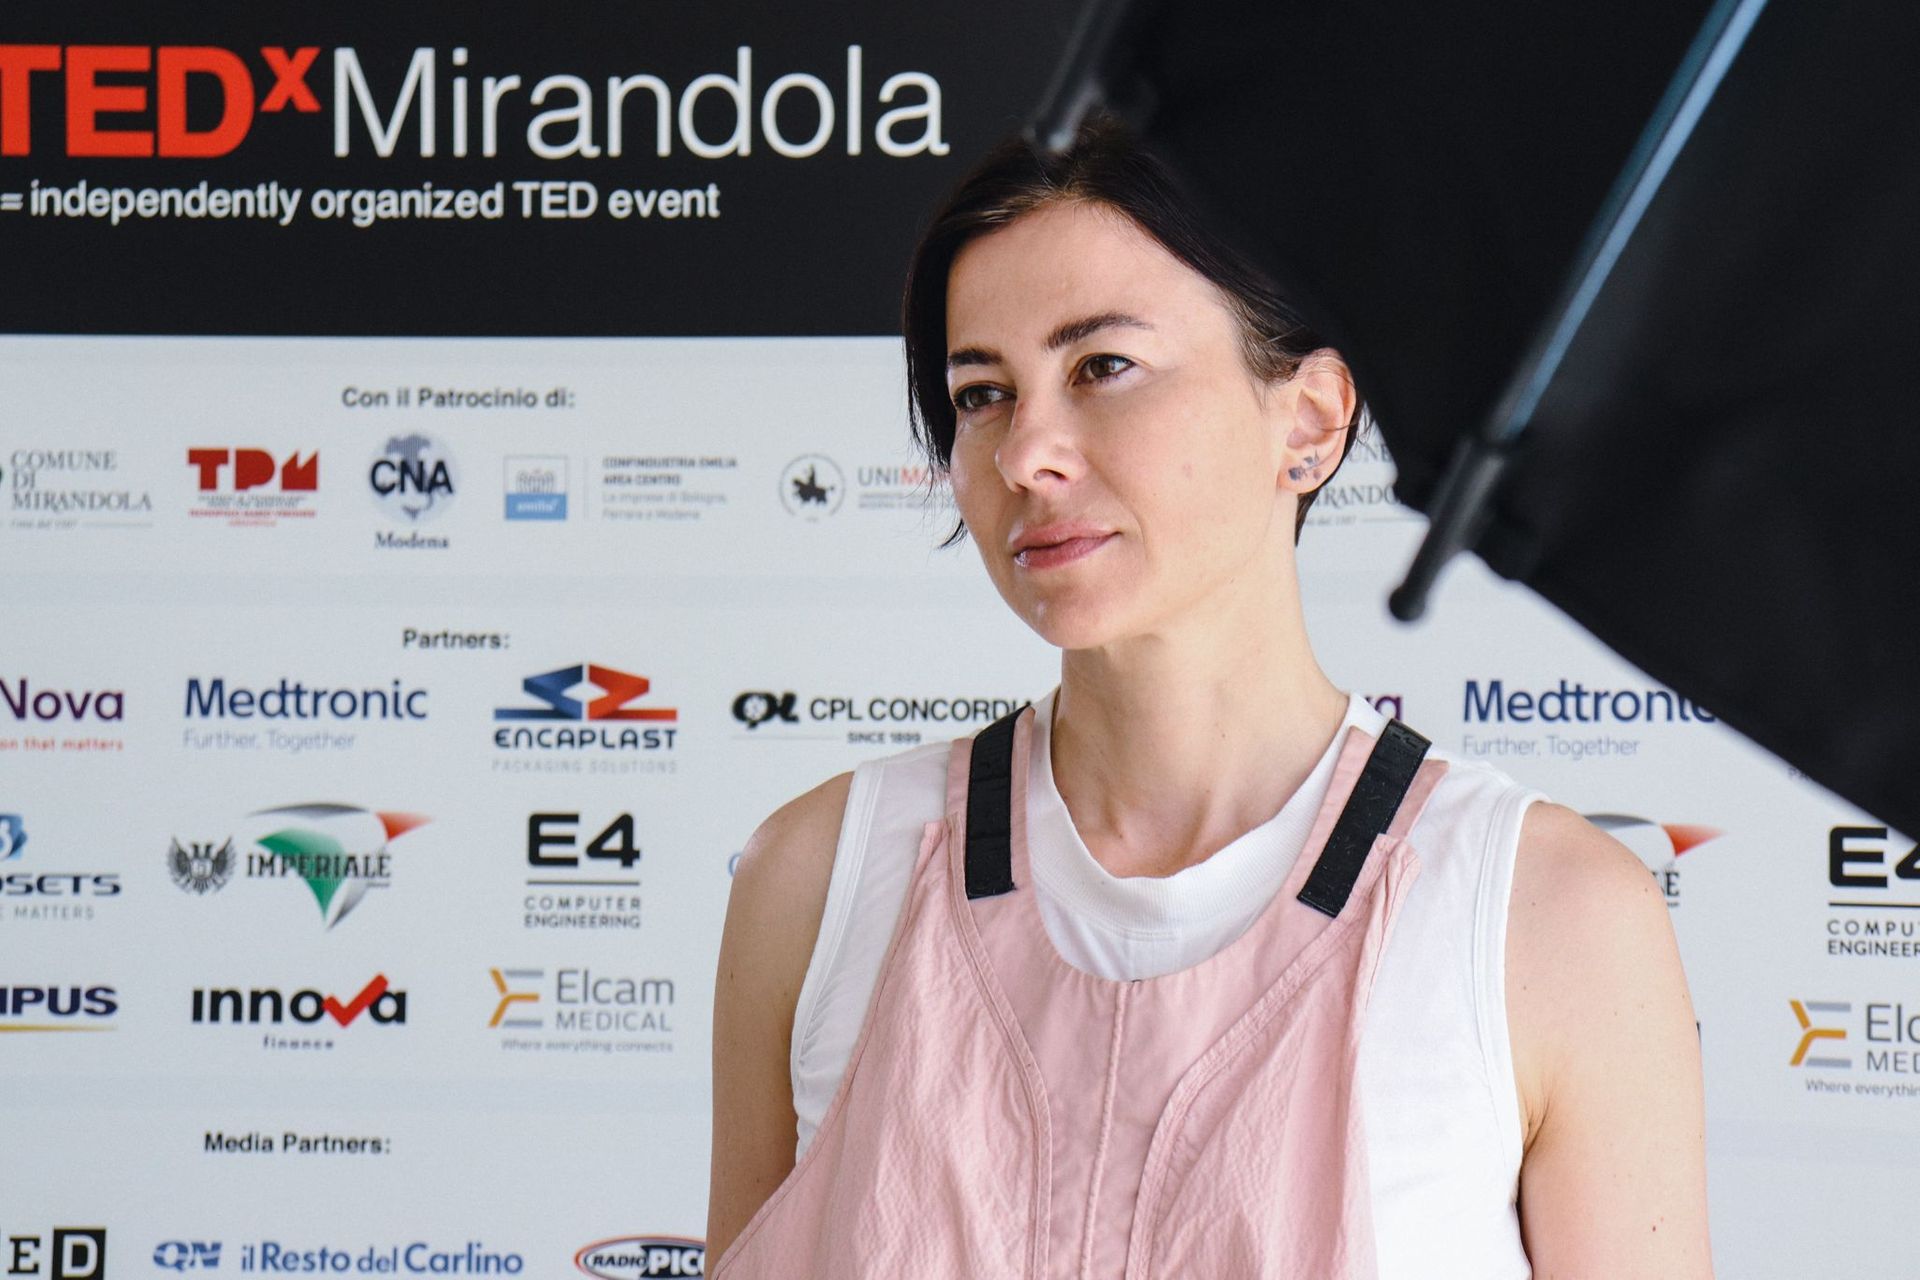 Grunnlegger av Maverx Foundation, Francesca Veronesi er datter av Mario, pioner i det biomedisinske distriktet i 1962: hun var foredragsholder ved den første utgaven av TEDx Mirandola